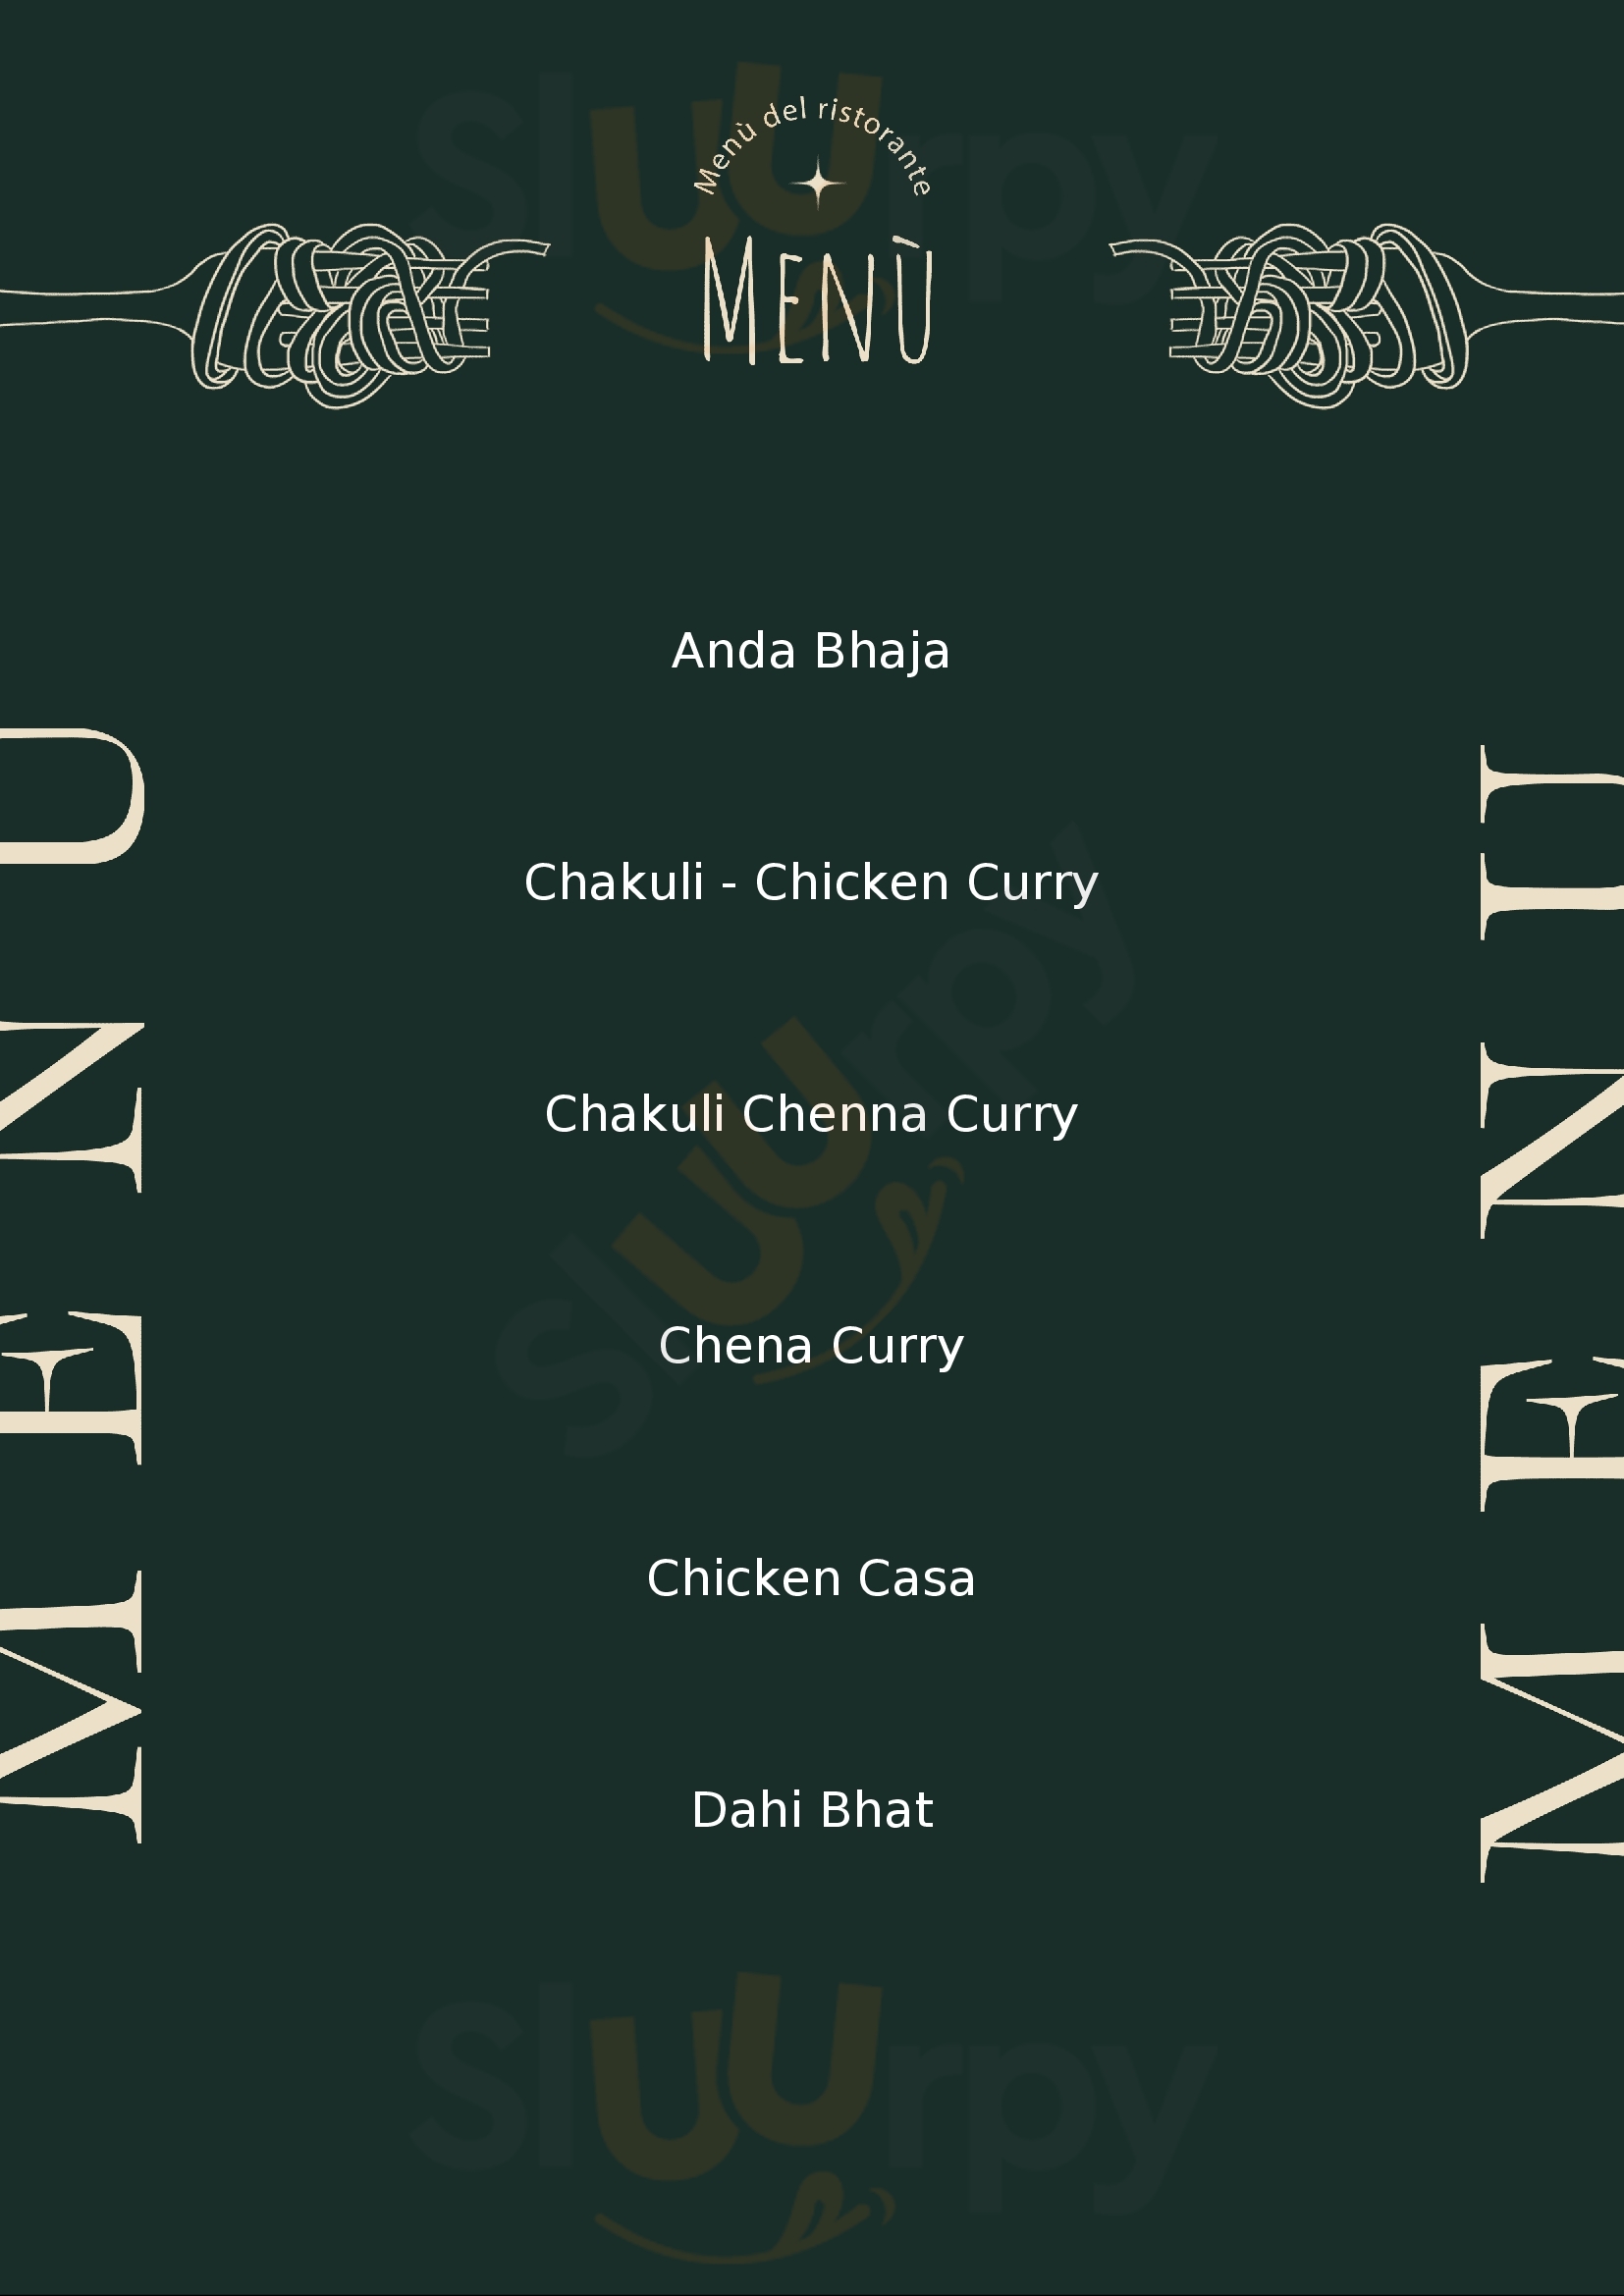 Tarcurry - Best Meals In Noida Noida Menu - 1